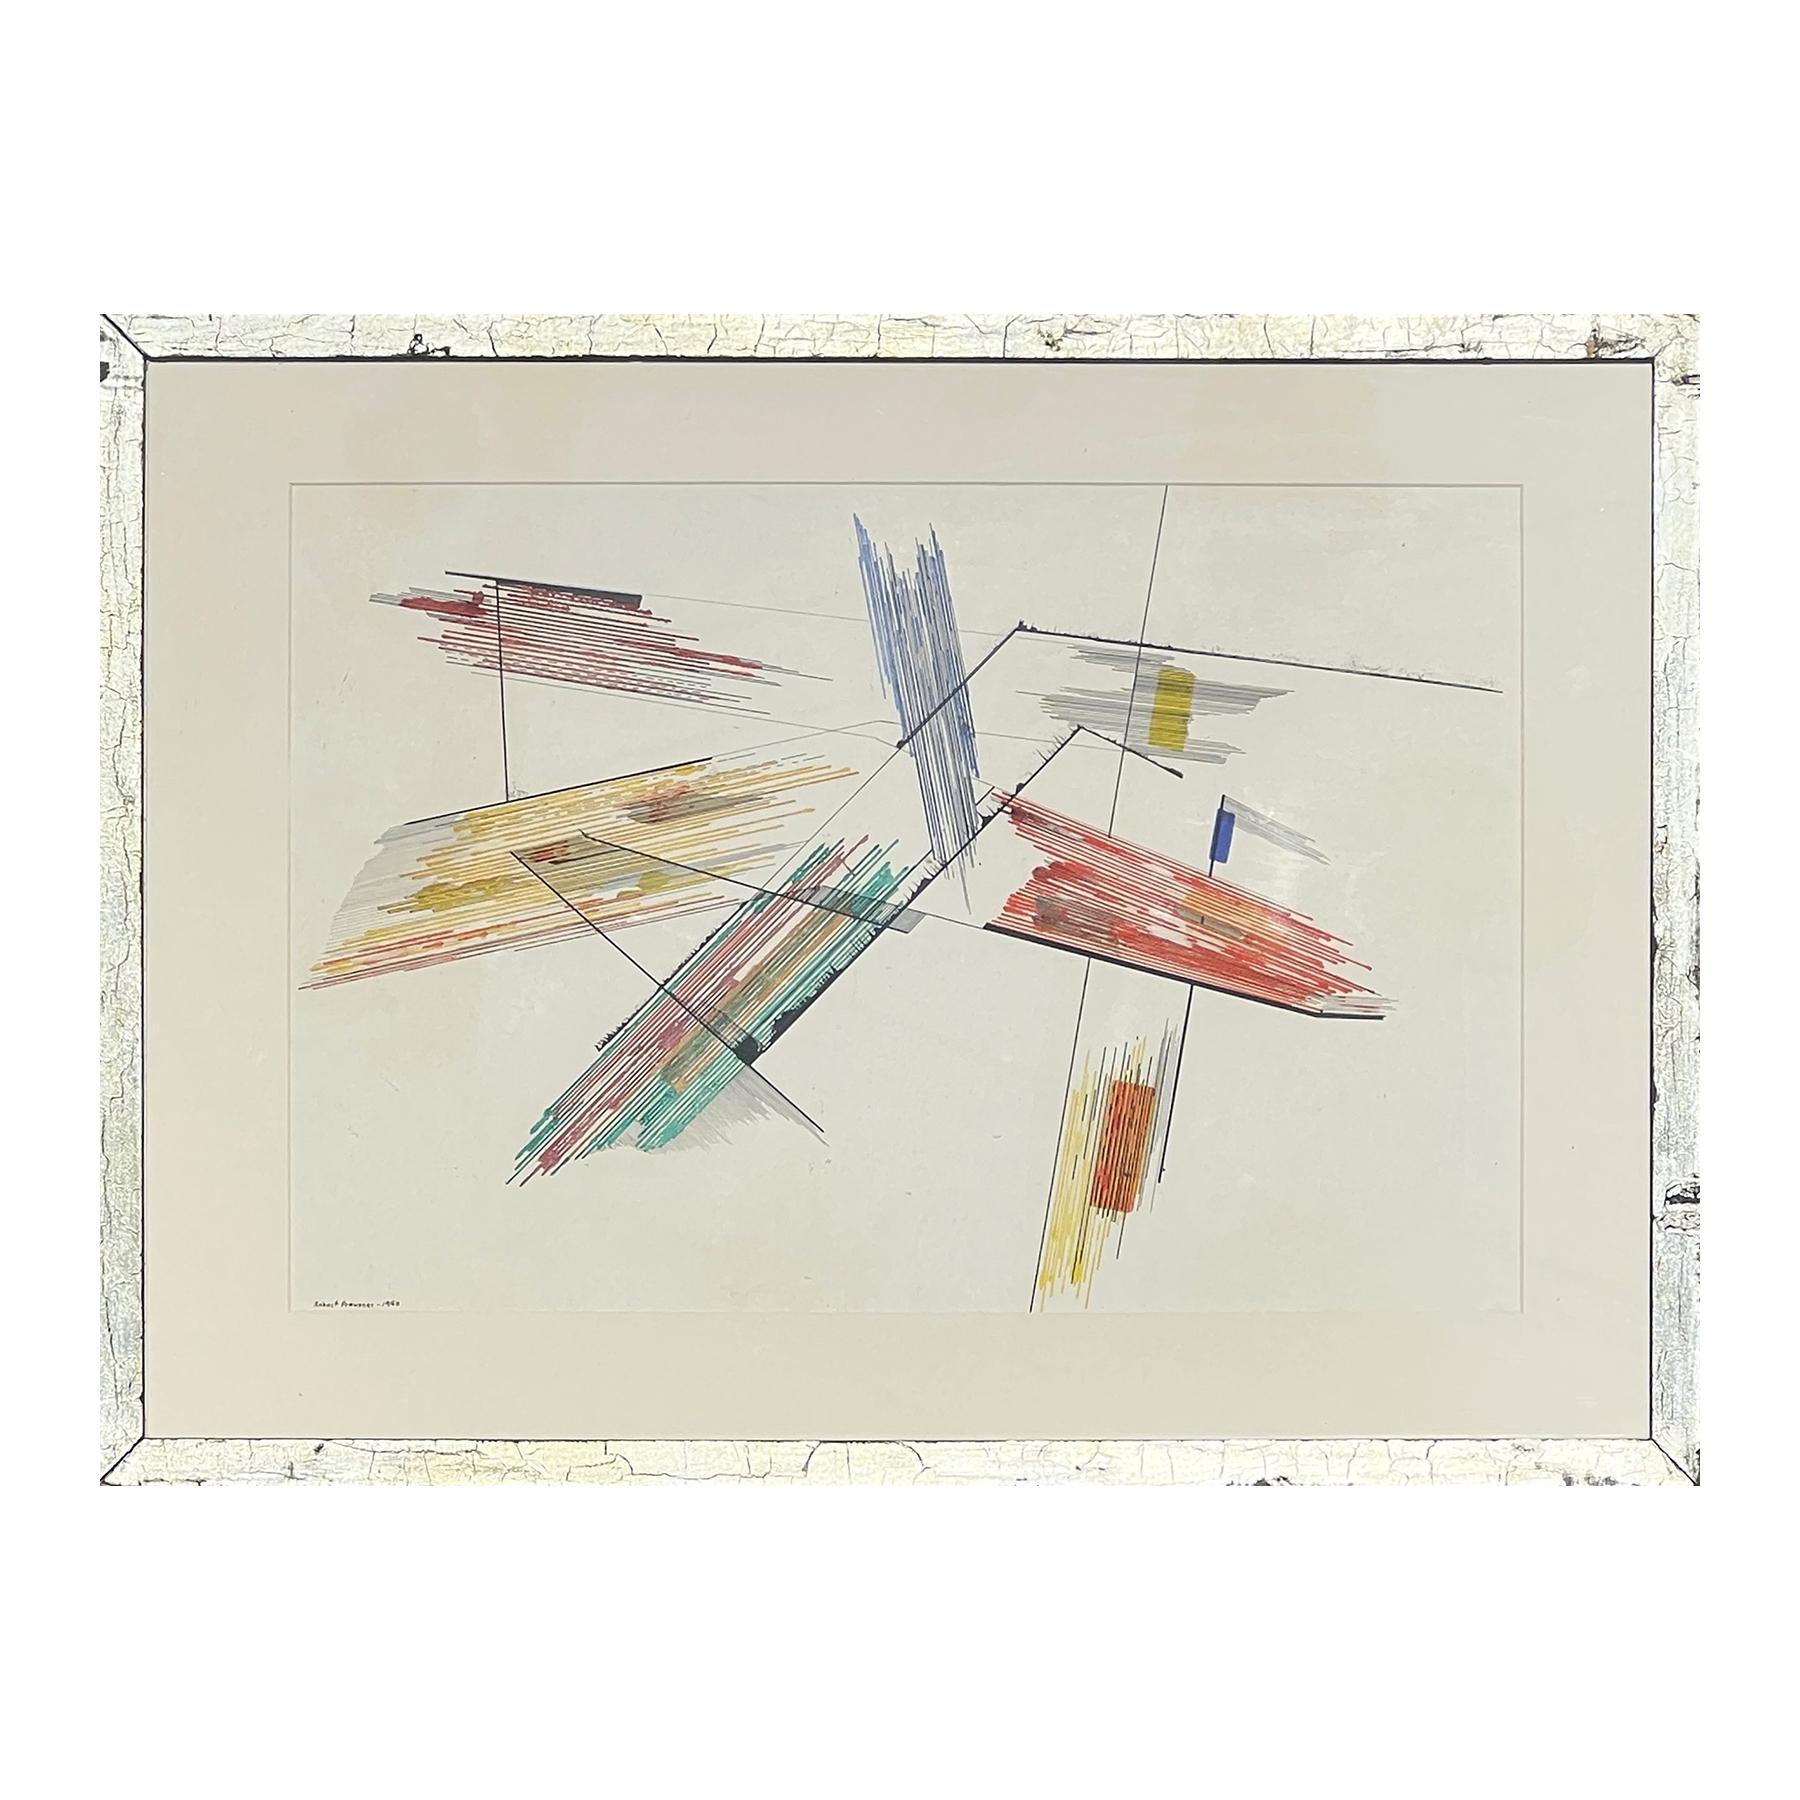 Drawing géométrique abstrait coloré rouge, bleu, jaune et vert du début de l'ère moderne - Painting de Robert Preusser